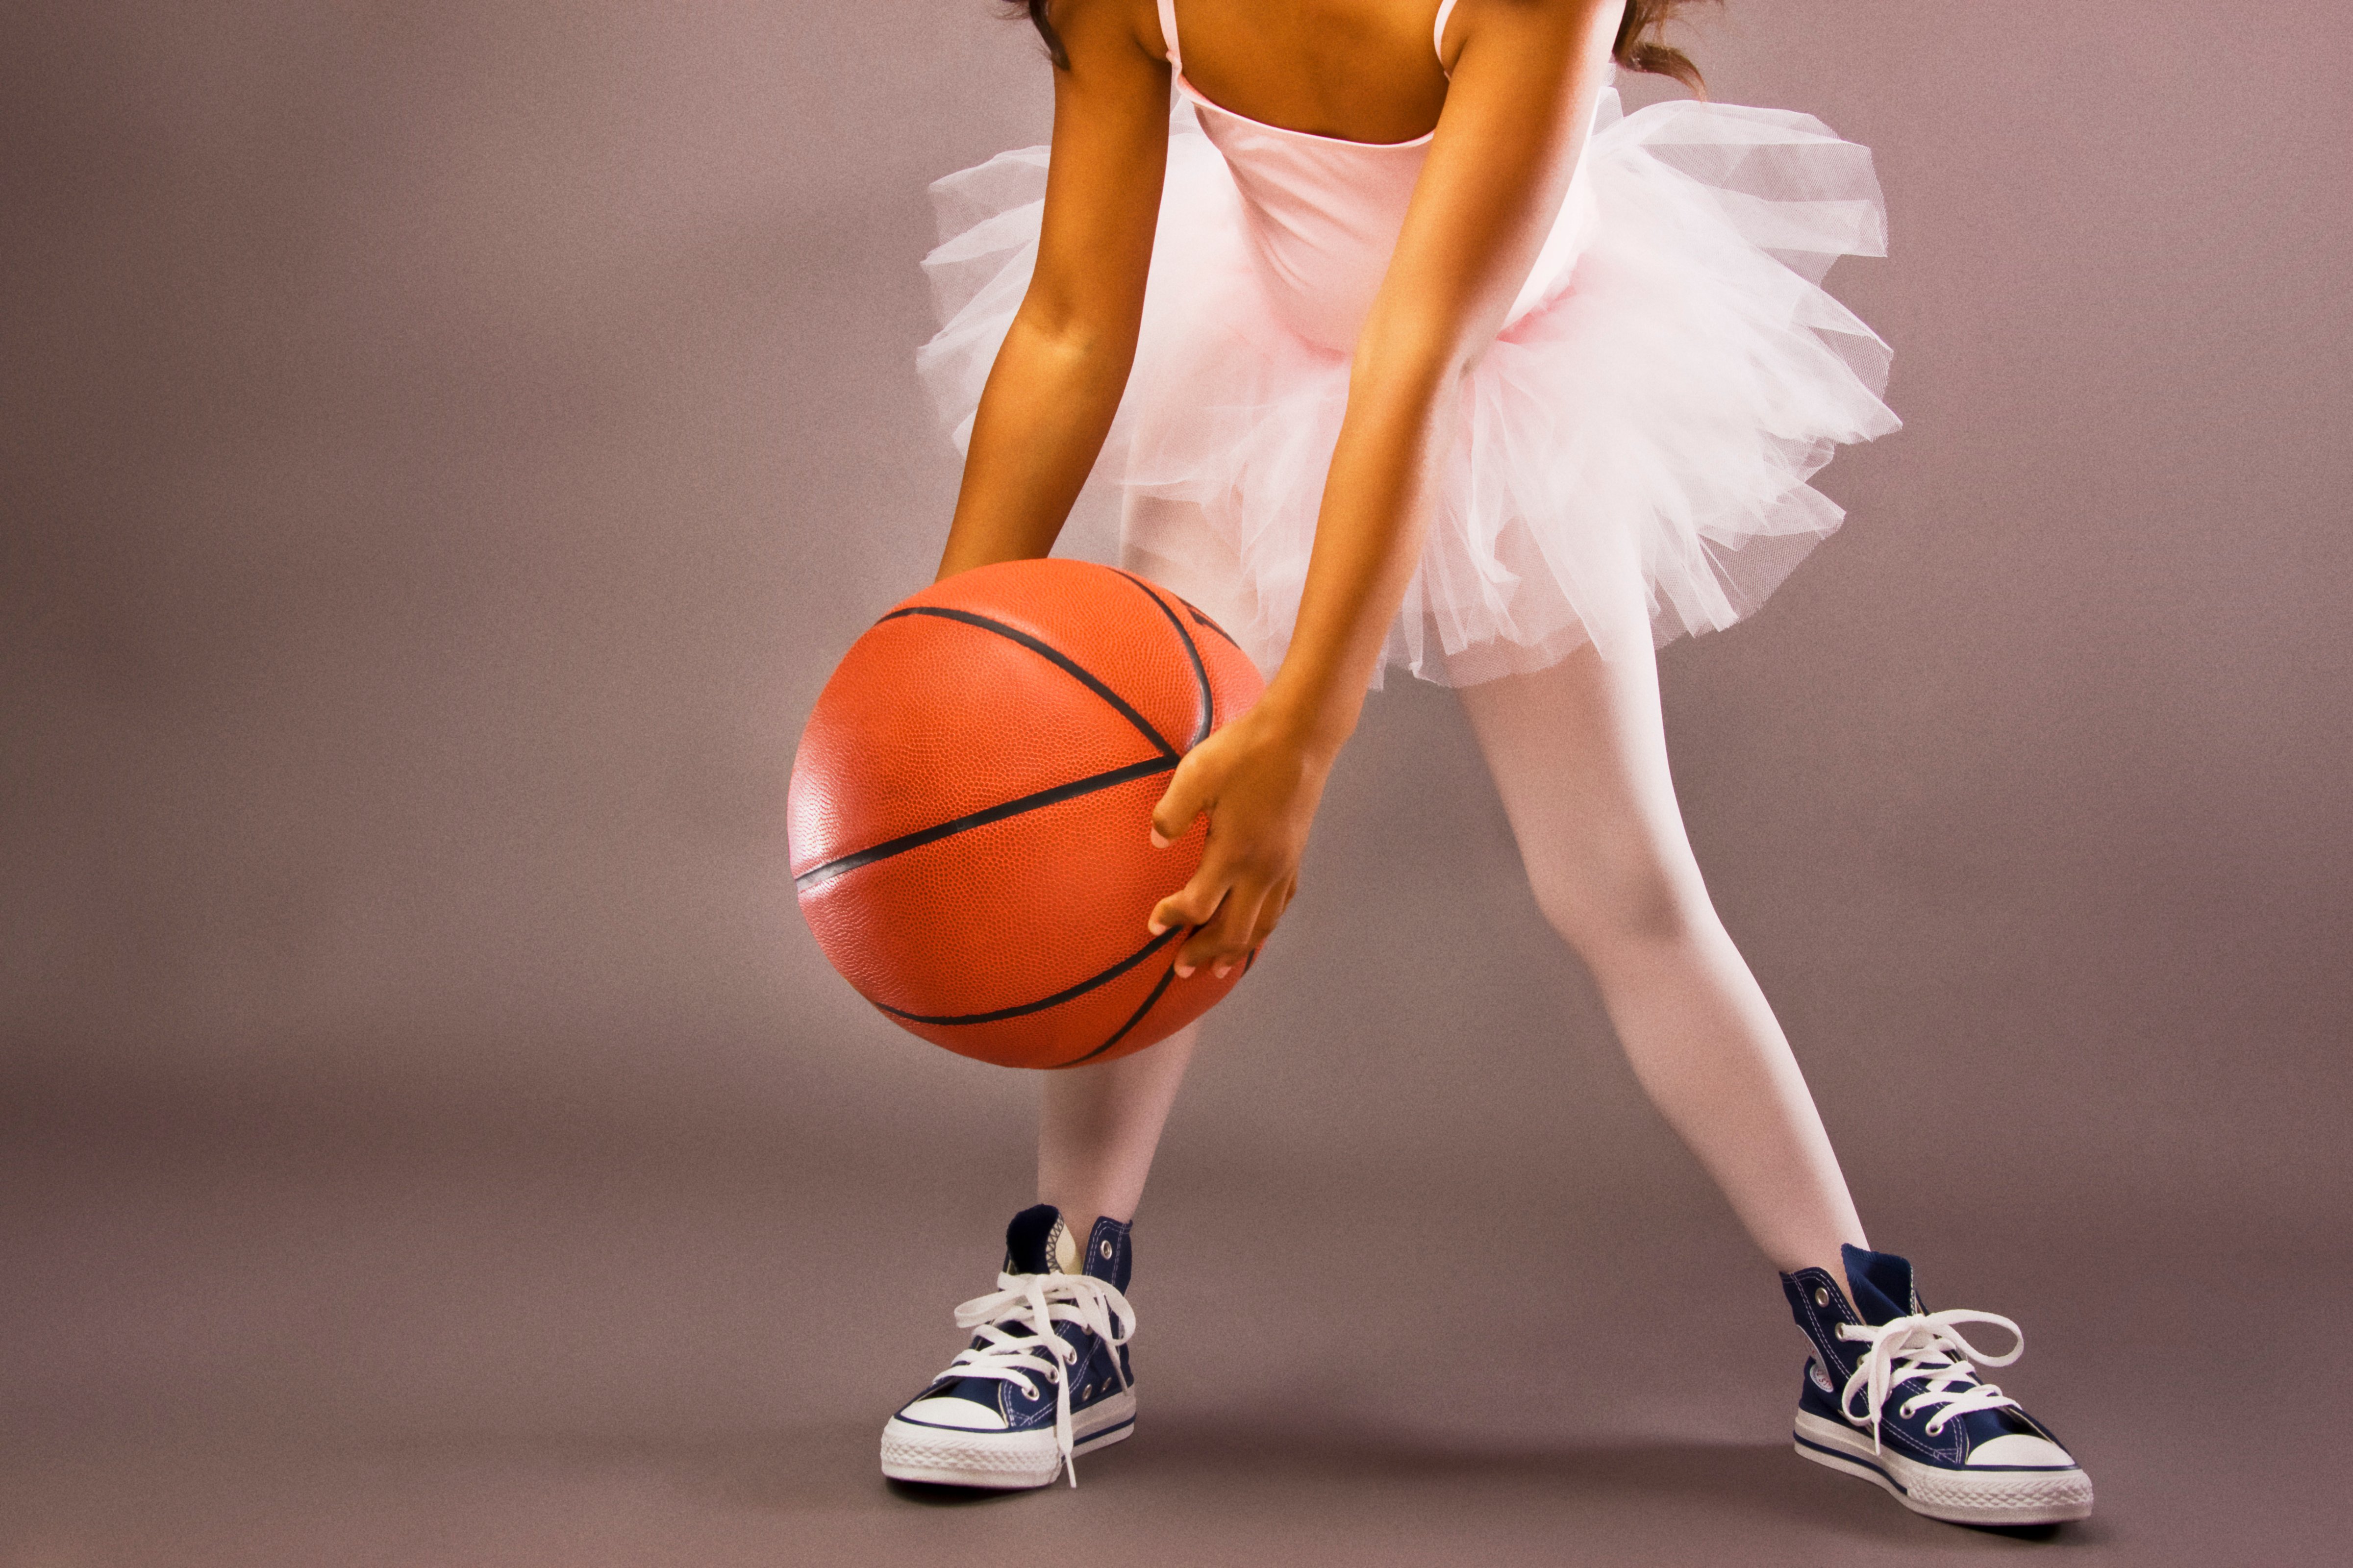 ballerina-girl-holding-basketball